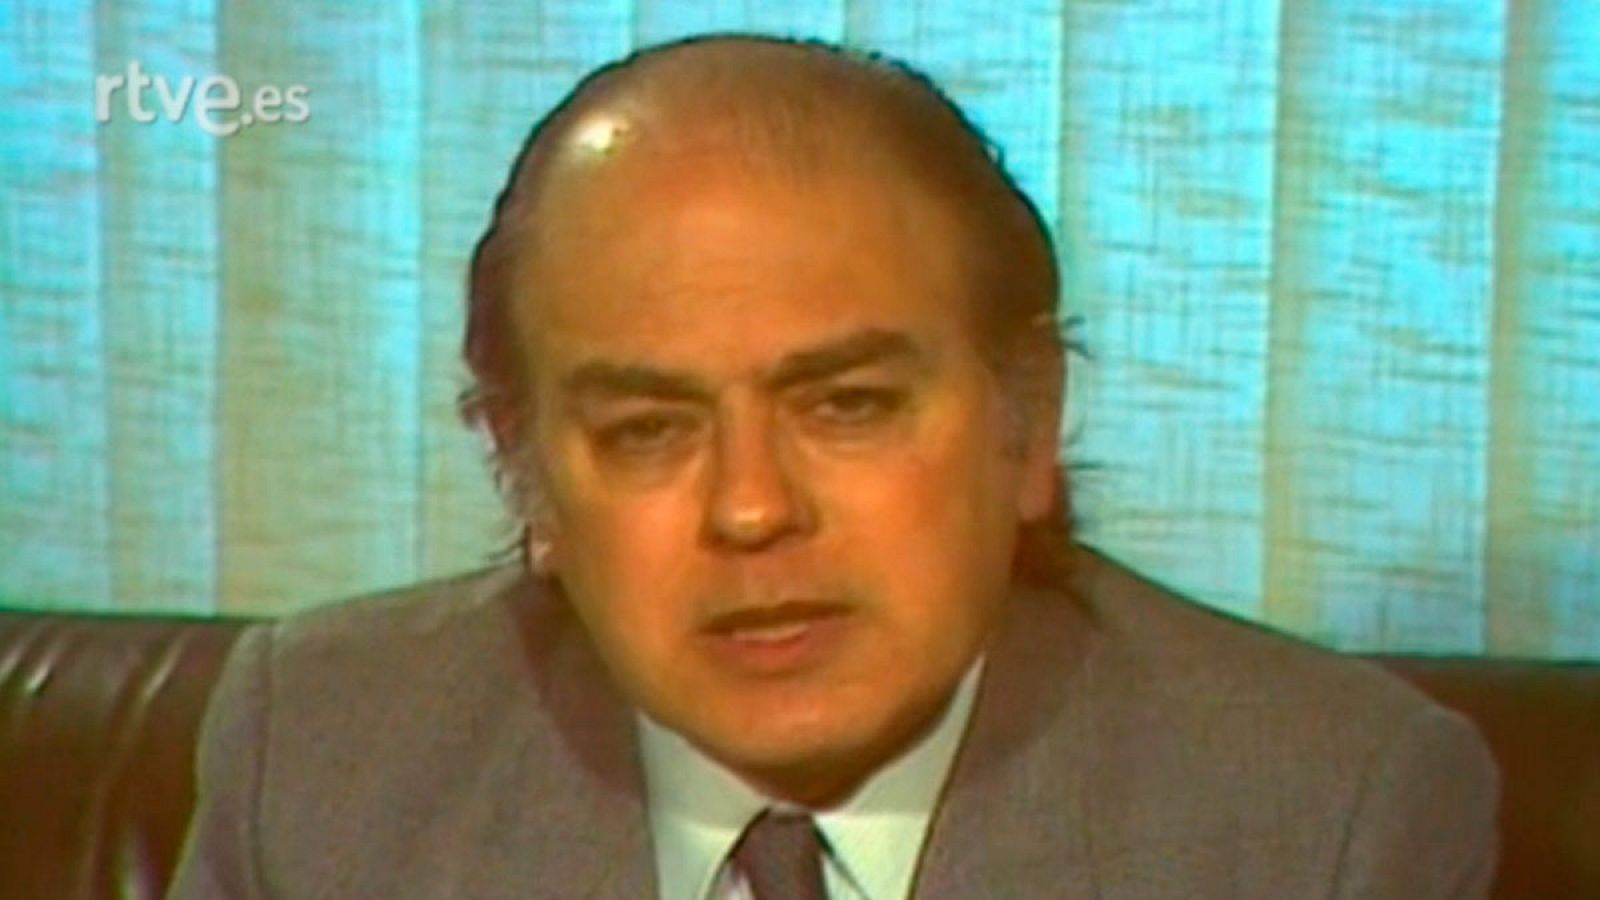 Arxiu TVE Catalunya - Entrevista a Jordi Pujol, candidat a la Presidència de la Generalitat de Catalunya 1980